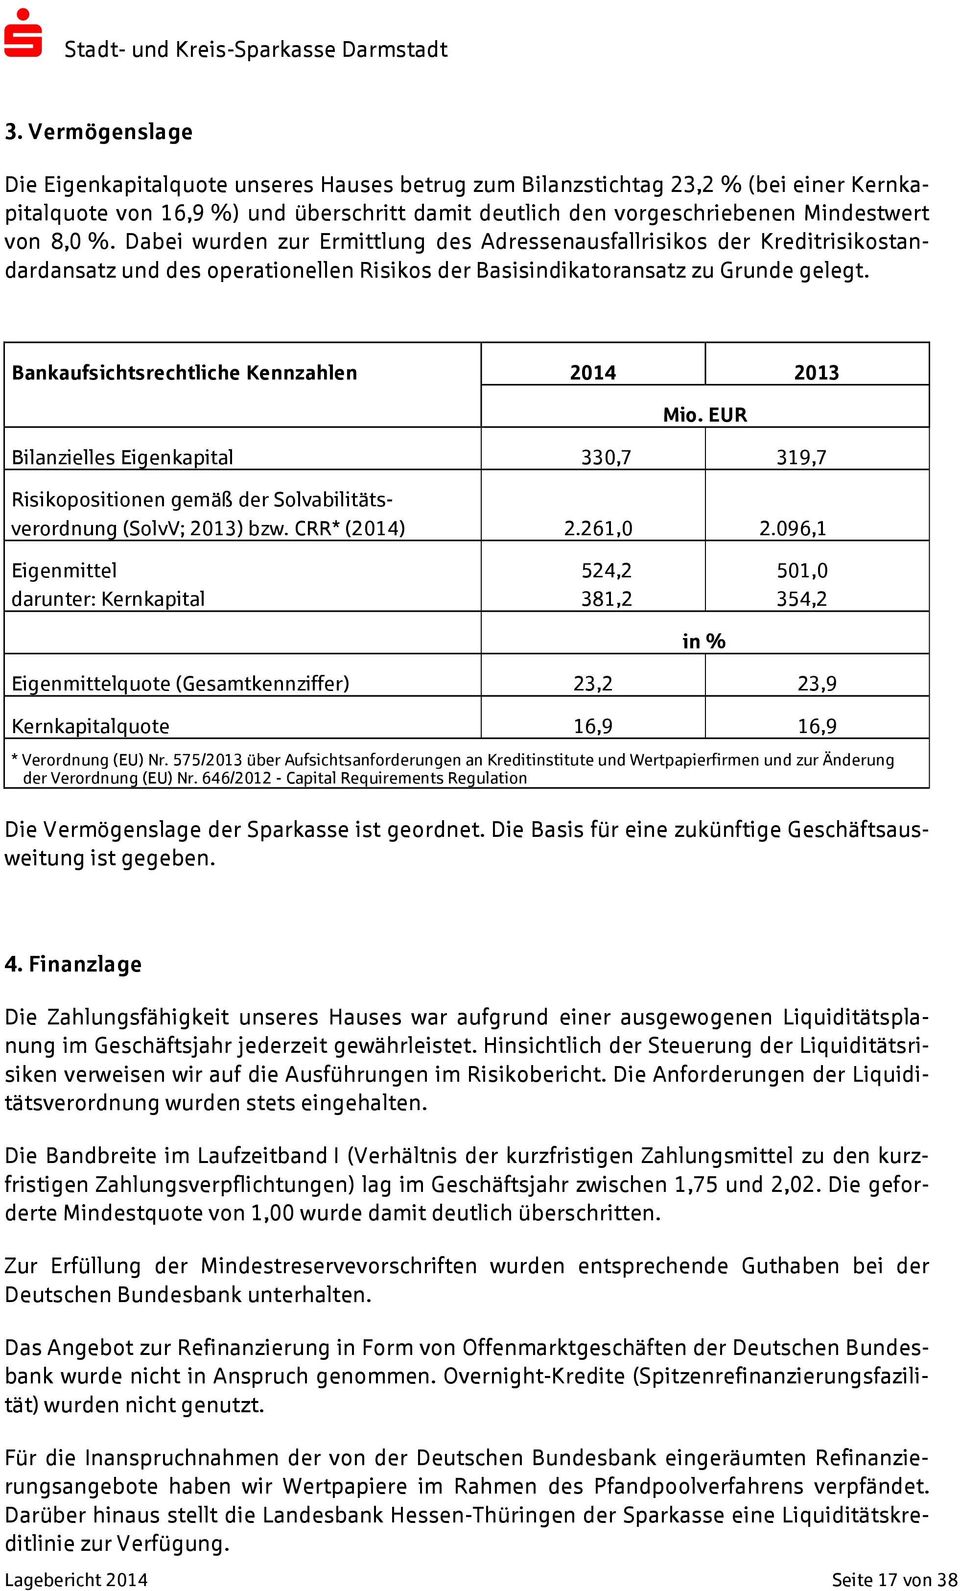 Bankaufsichtsrechtliche Kennzahlen 2014 2013 Mio. EUR Bilanzielles Eigenkapital 330,7 319,7 Risikopositionen gemäß der Solvabilitätsverordnung (SolvV; 2013) bzw. CRR* (2014) 2.261,0 2.